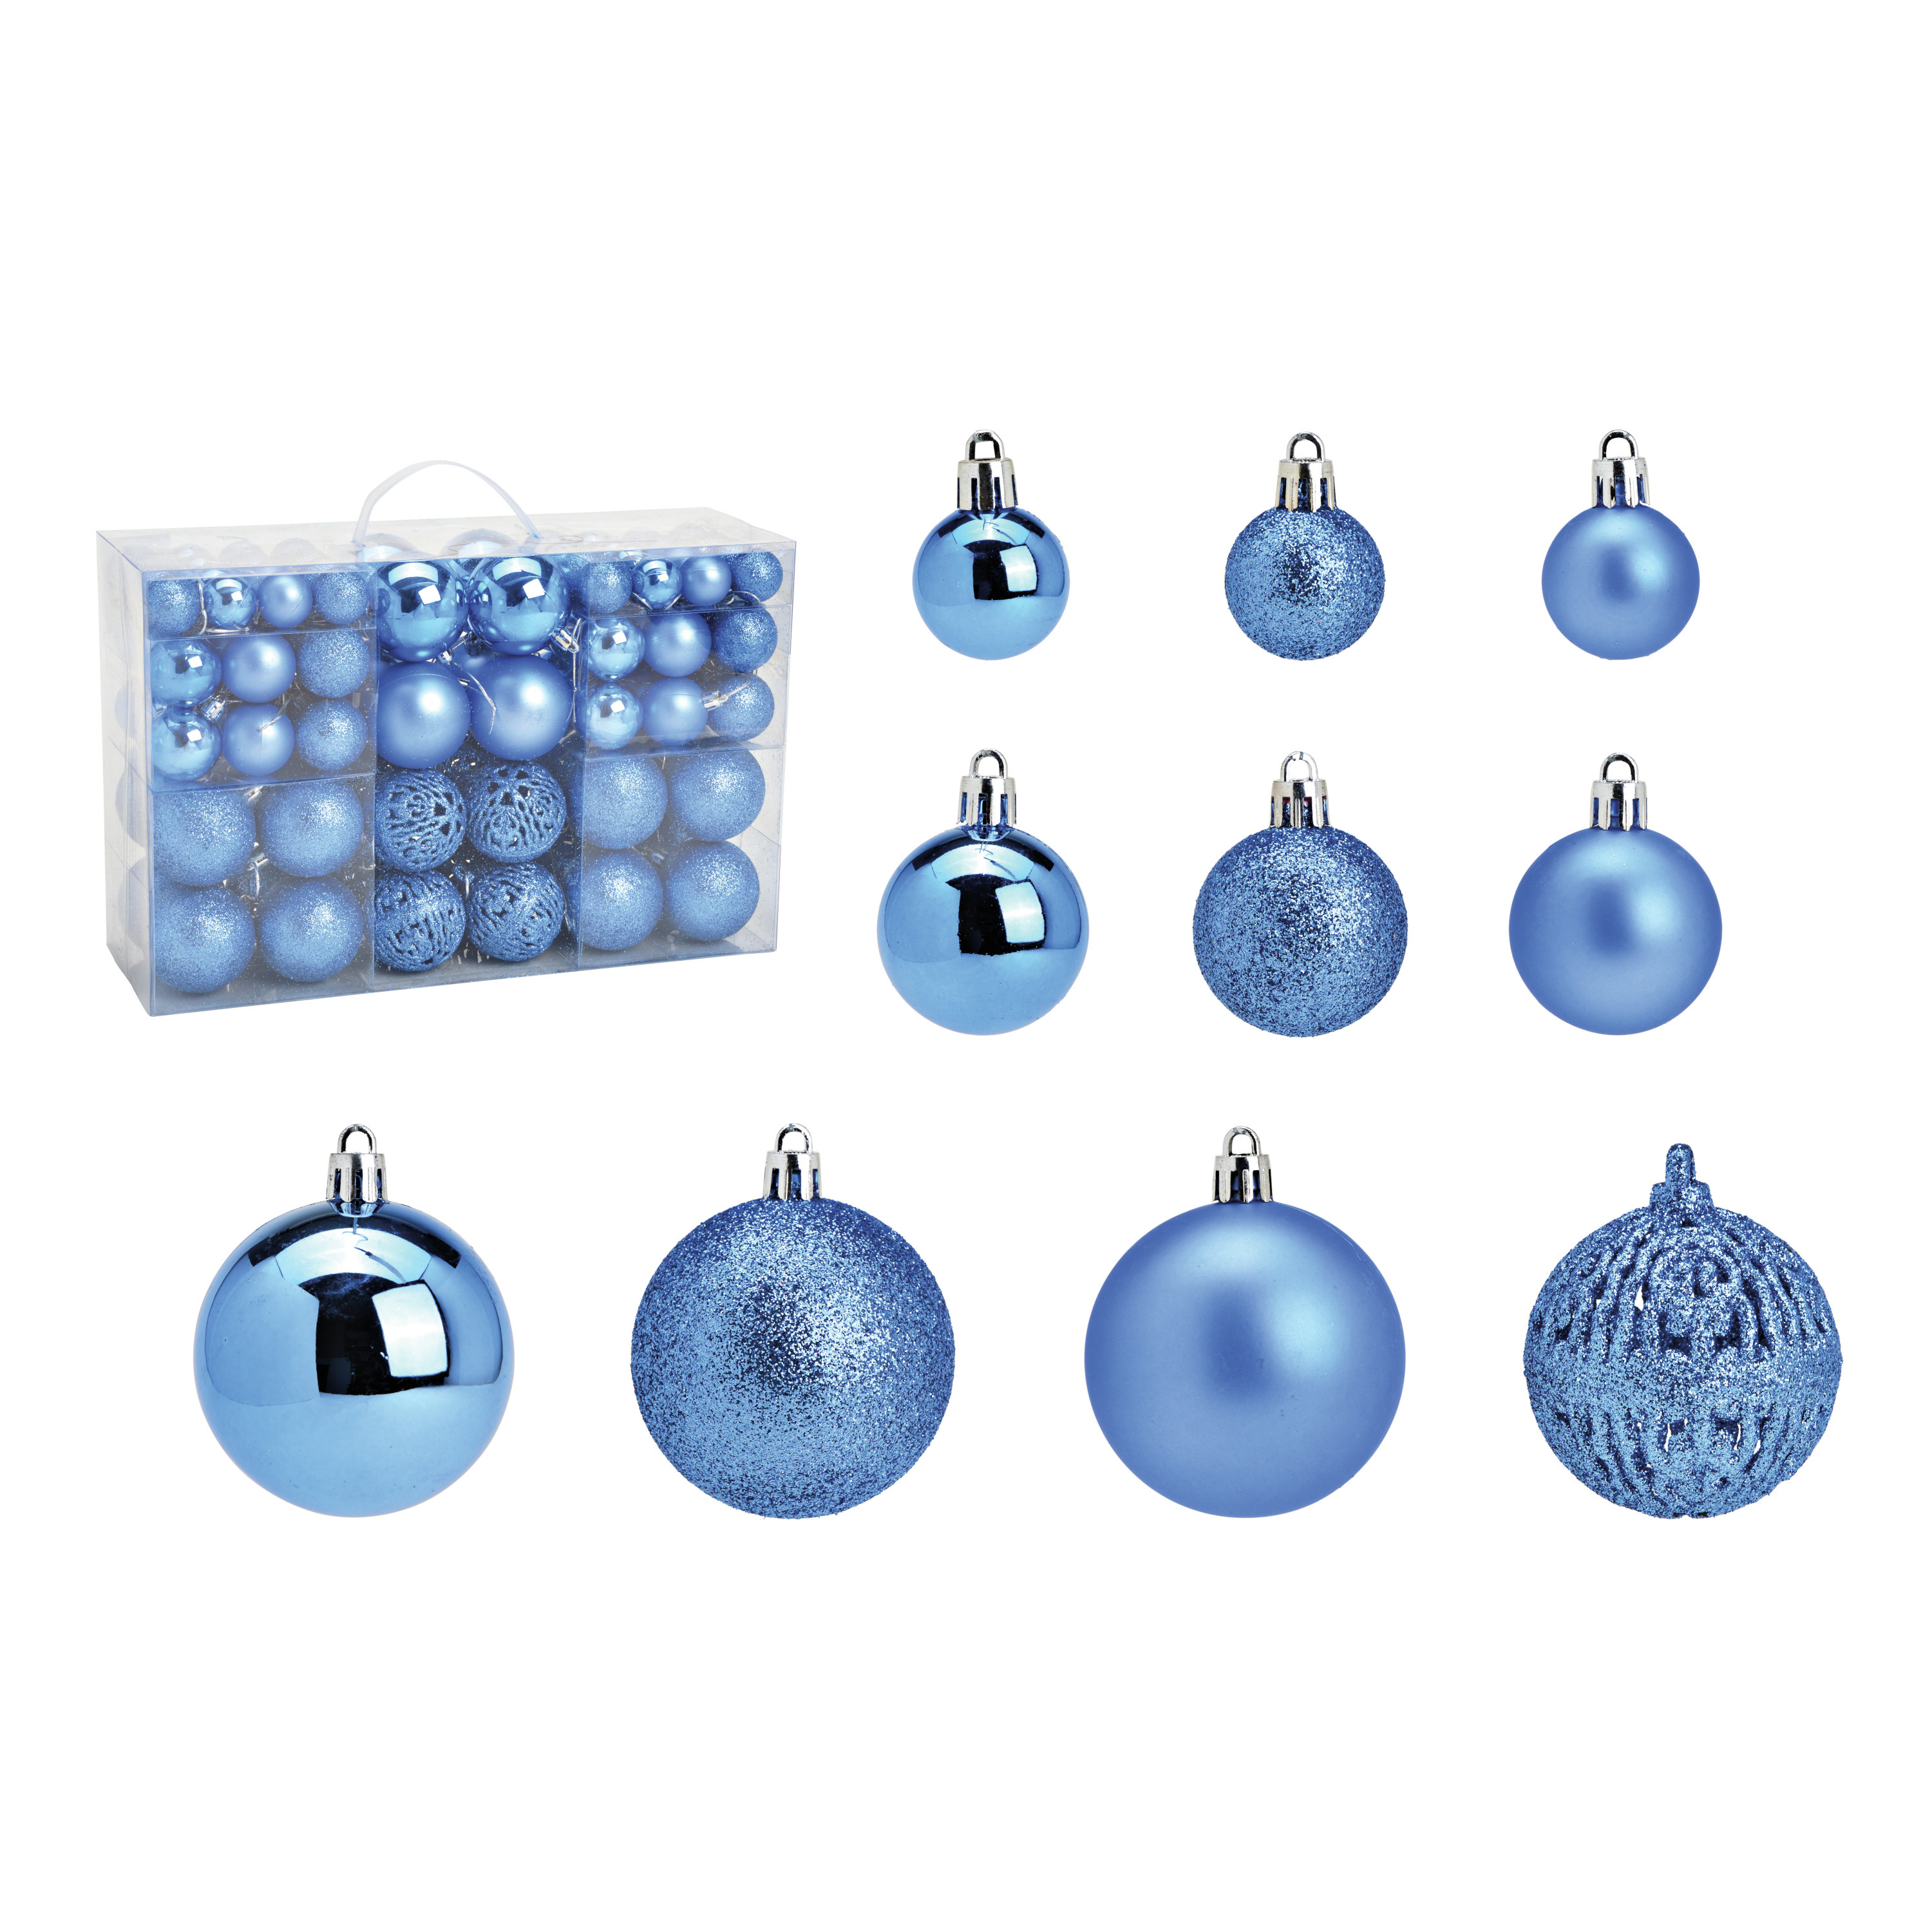 Kerstballen 100x stuks 3, 4 en 6 cm blauw kunststof kerstversiering